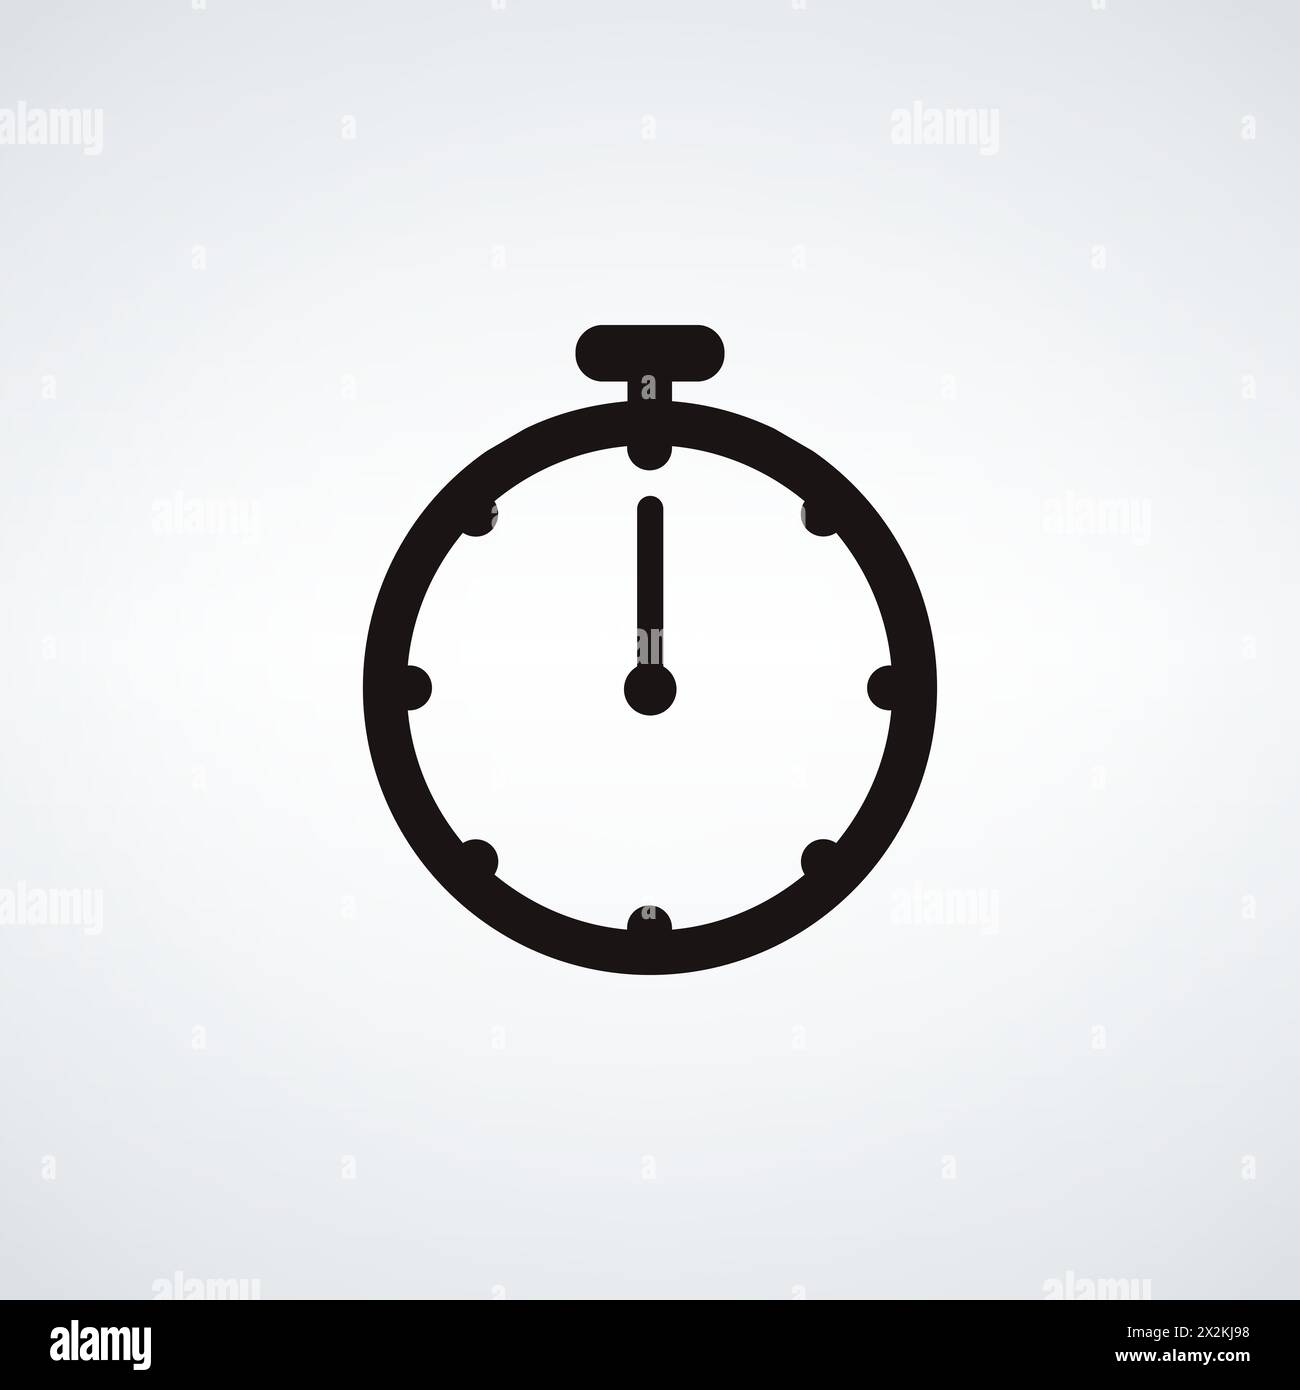 Icona cronometro o timer, logo. Cronometro, segnale intervallo scadenza. Misurazione del tempo immagine vettoriale stock isolata su sfondo bianco. Illustrazione Vettoriale